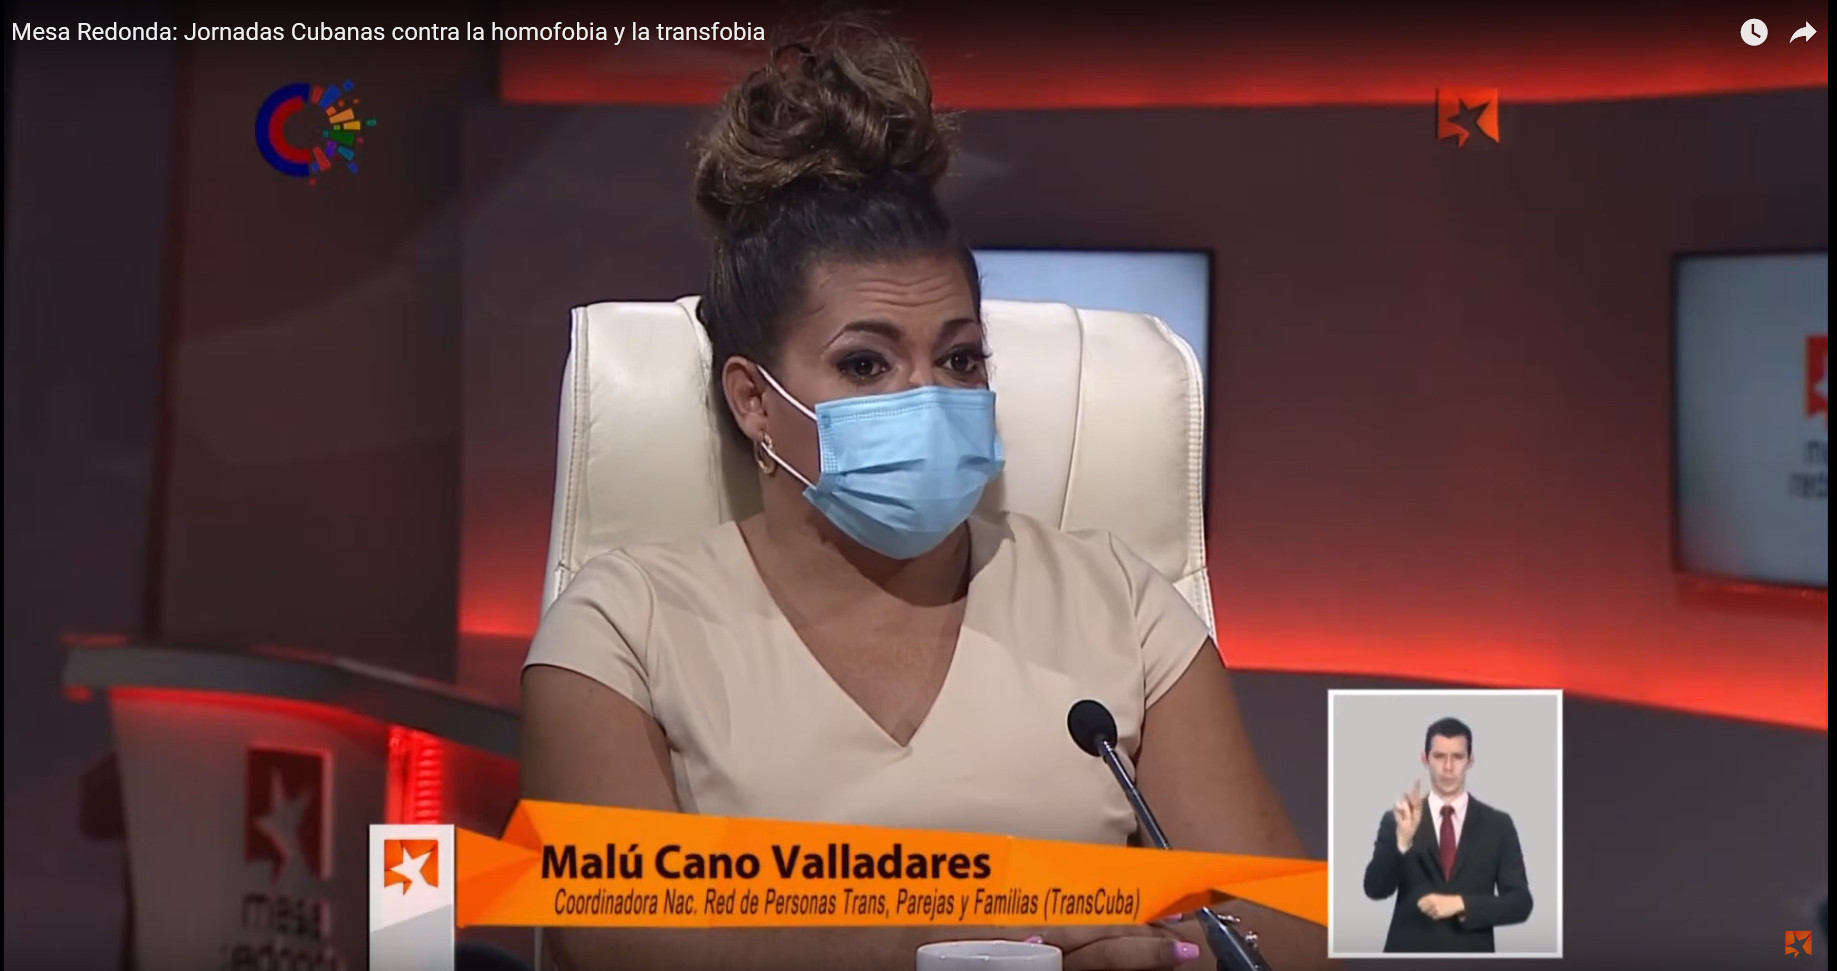 Contra la homofobia y transfobia - Malú Cano Valladares